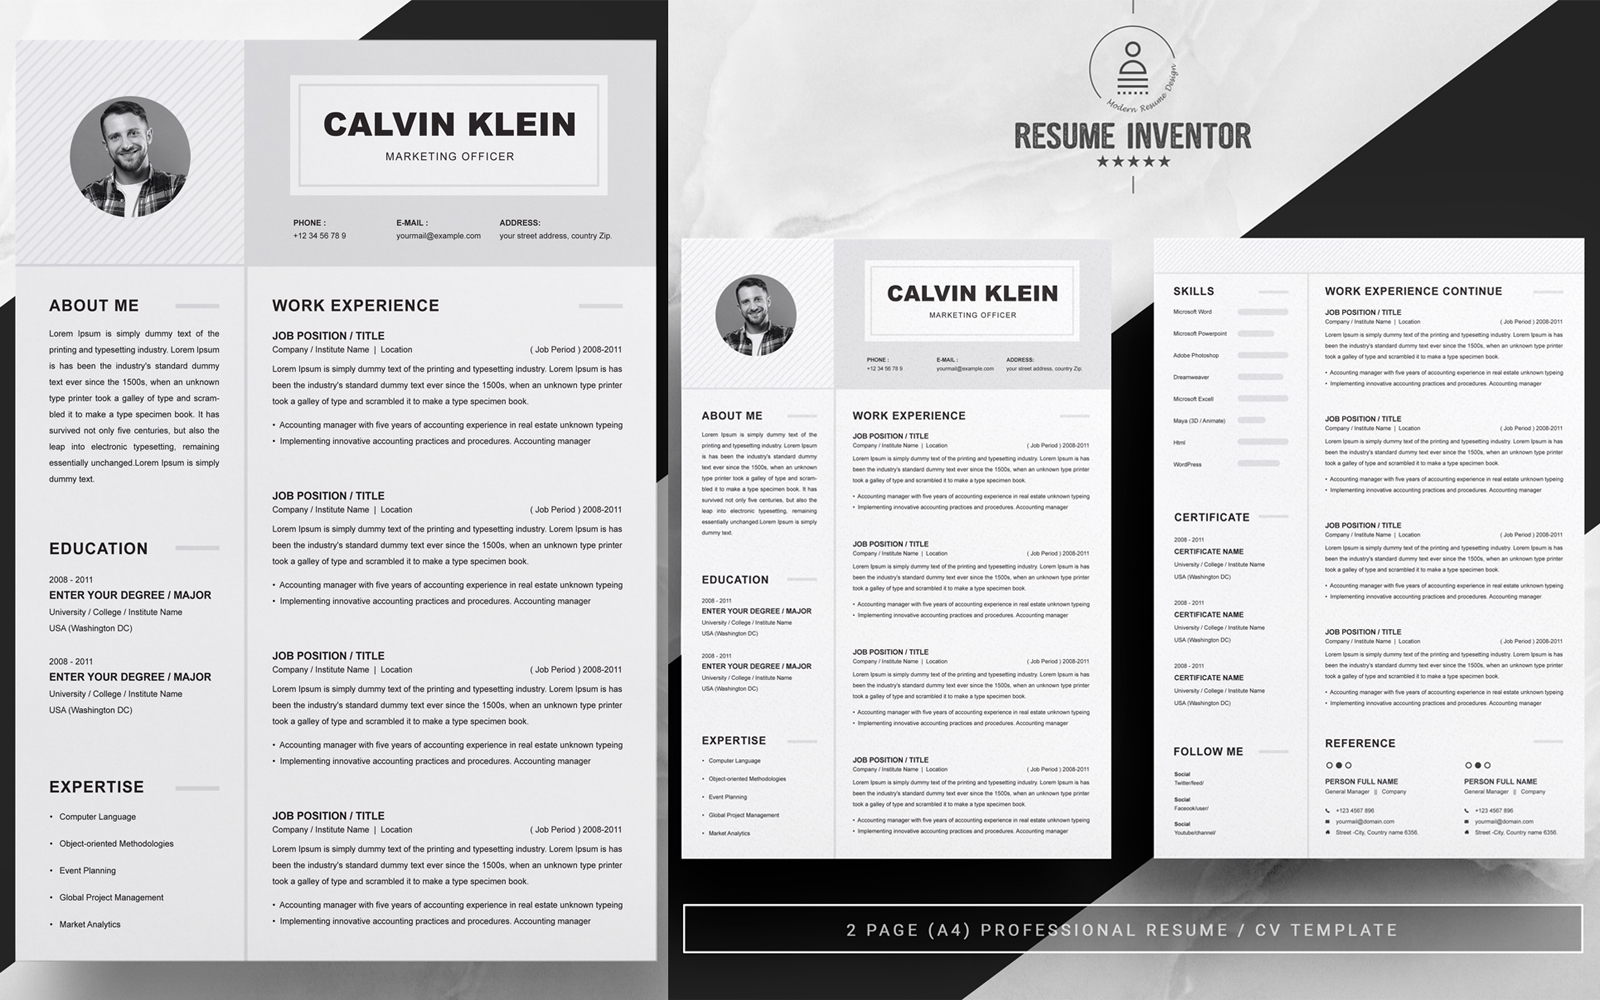 Calvin Klein / Resume Template